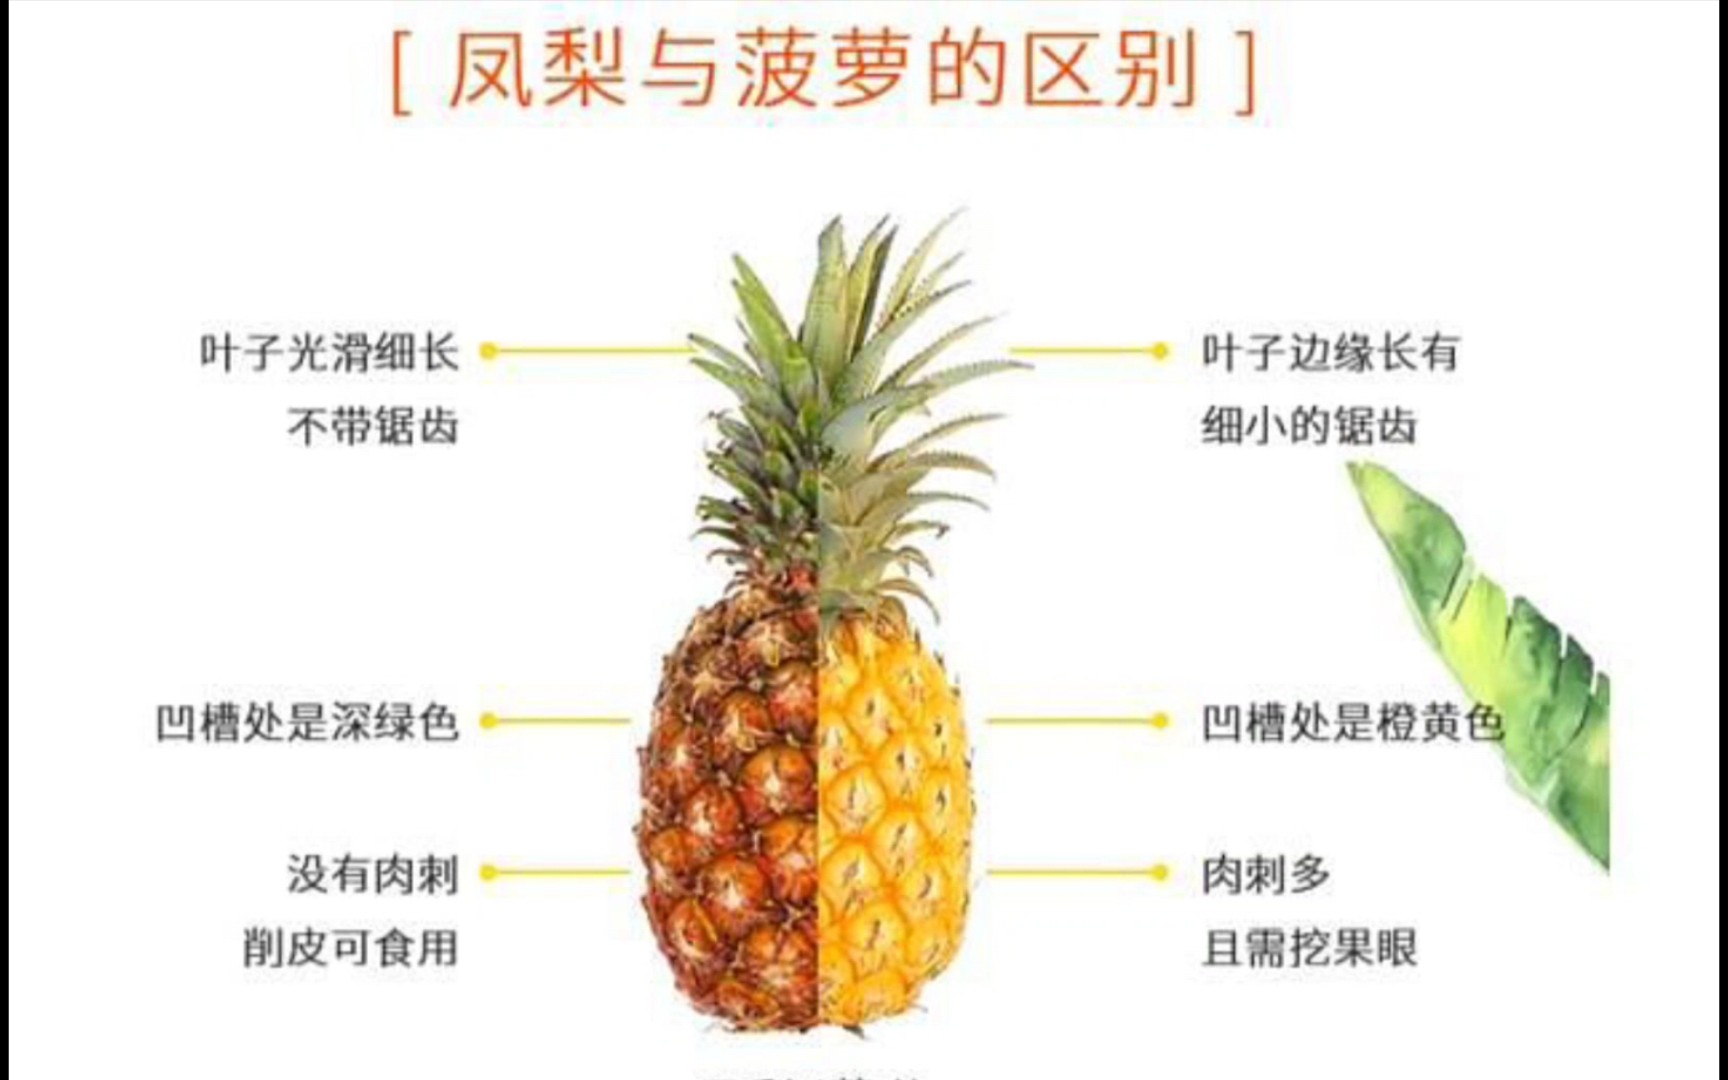 活动作品菠萝与凤梨的区别九年义务教育白学了